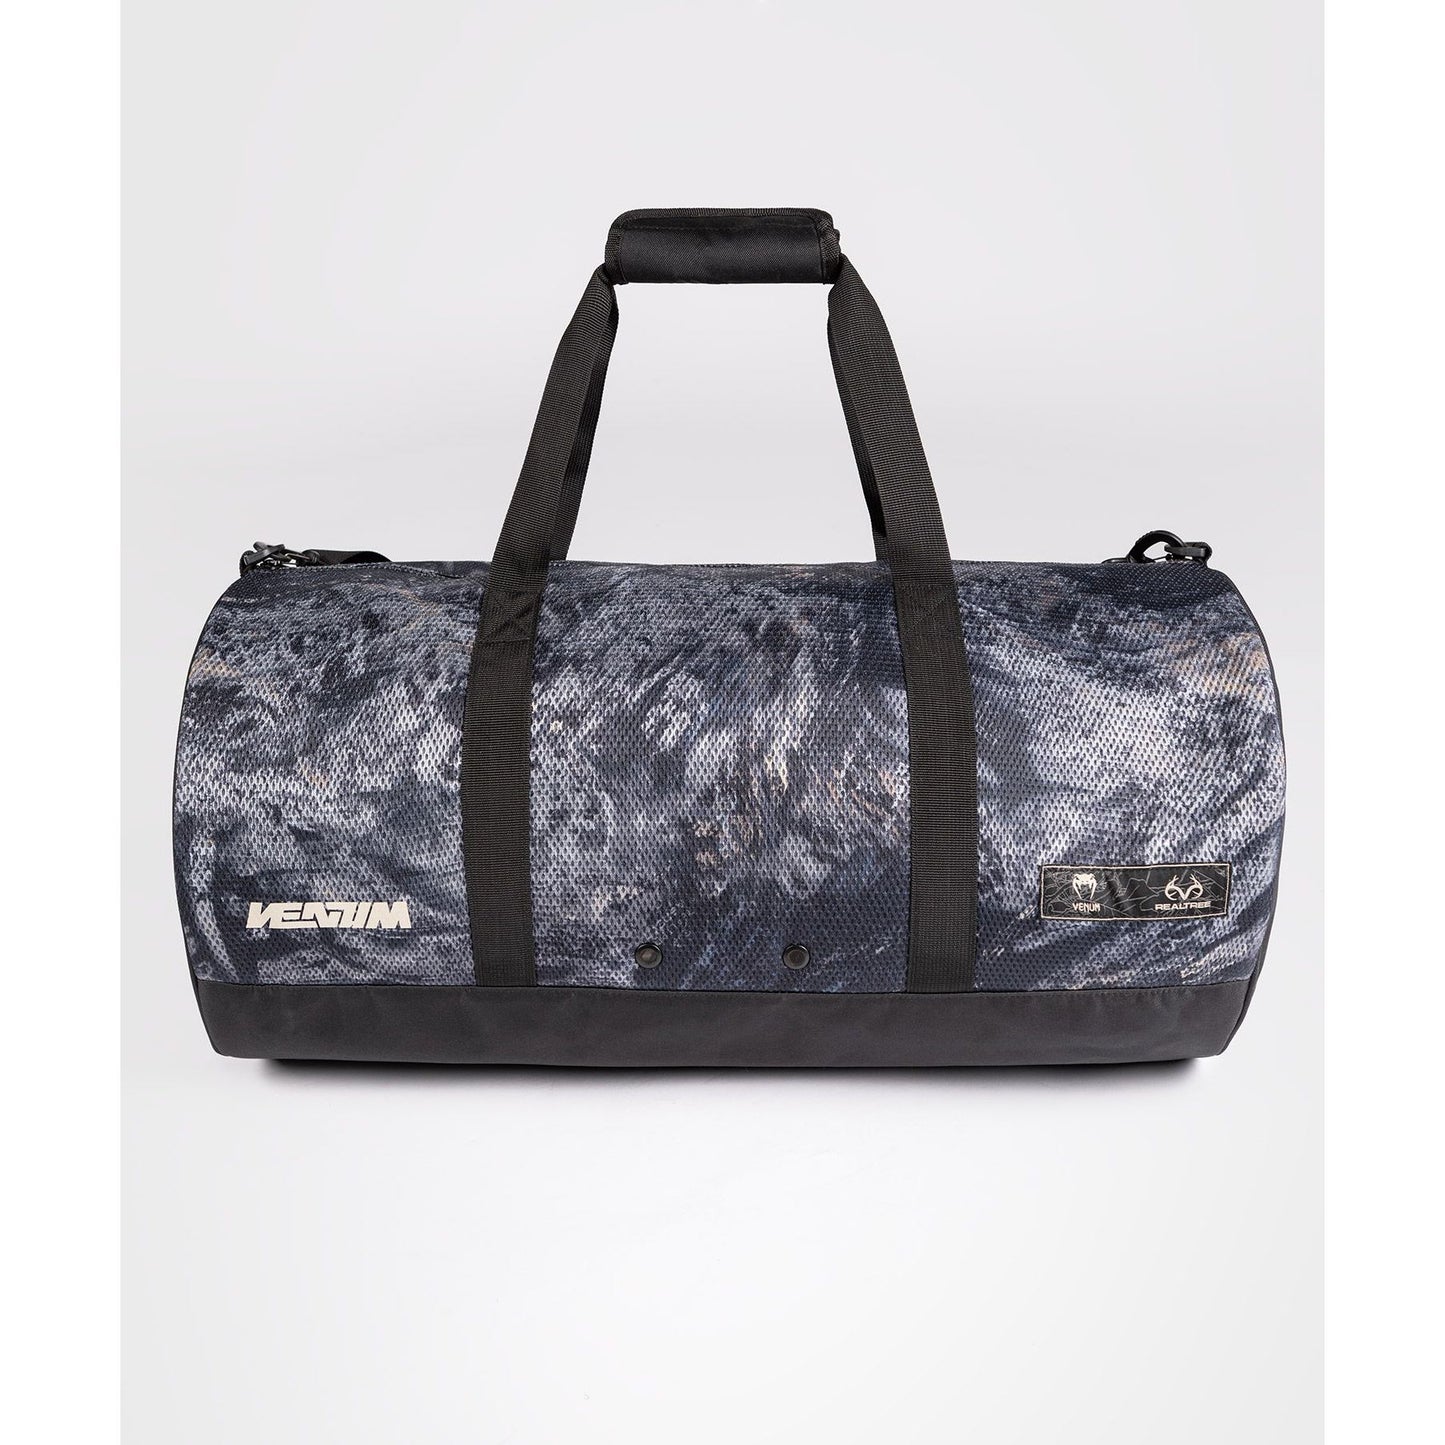 Venum Laser Xt Realtree Duffle Bag